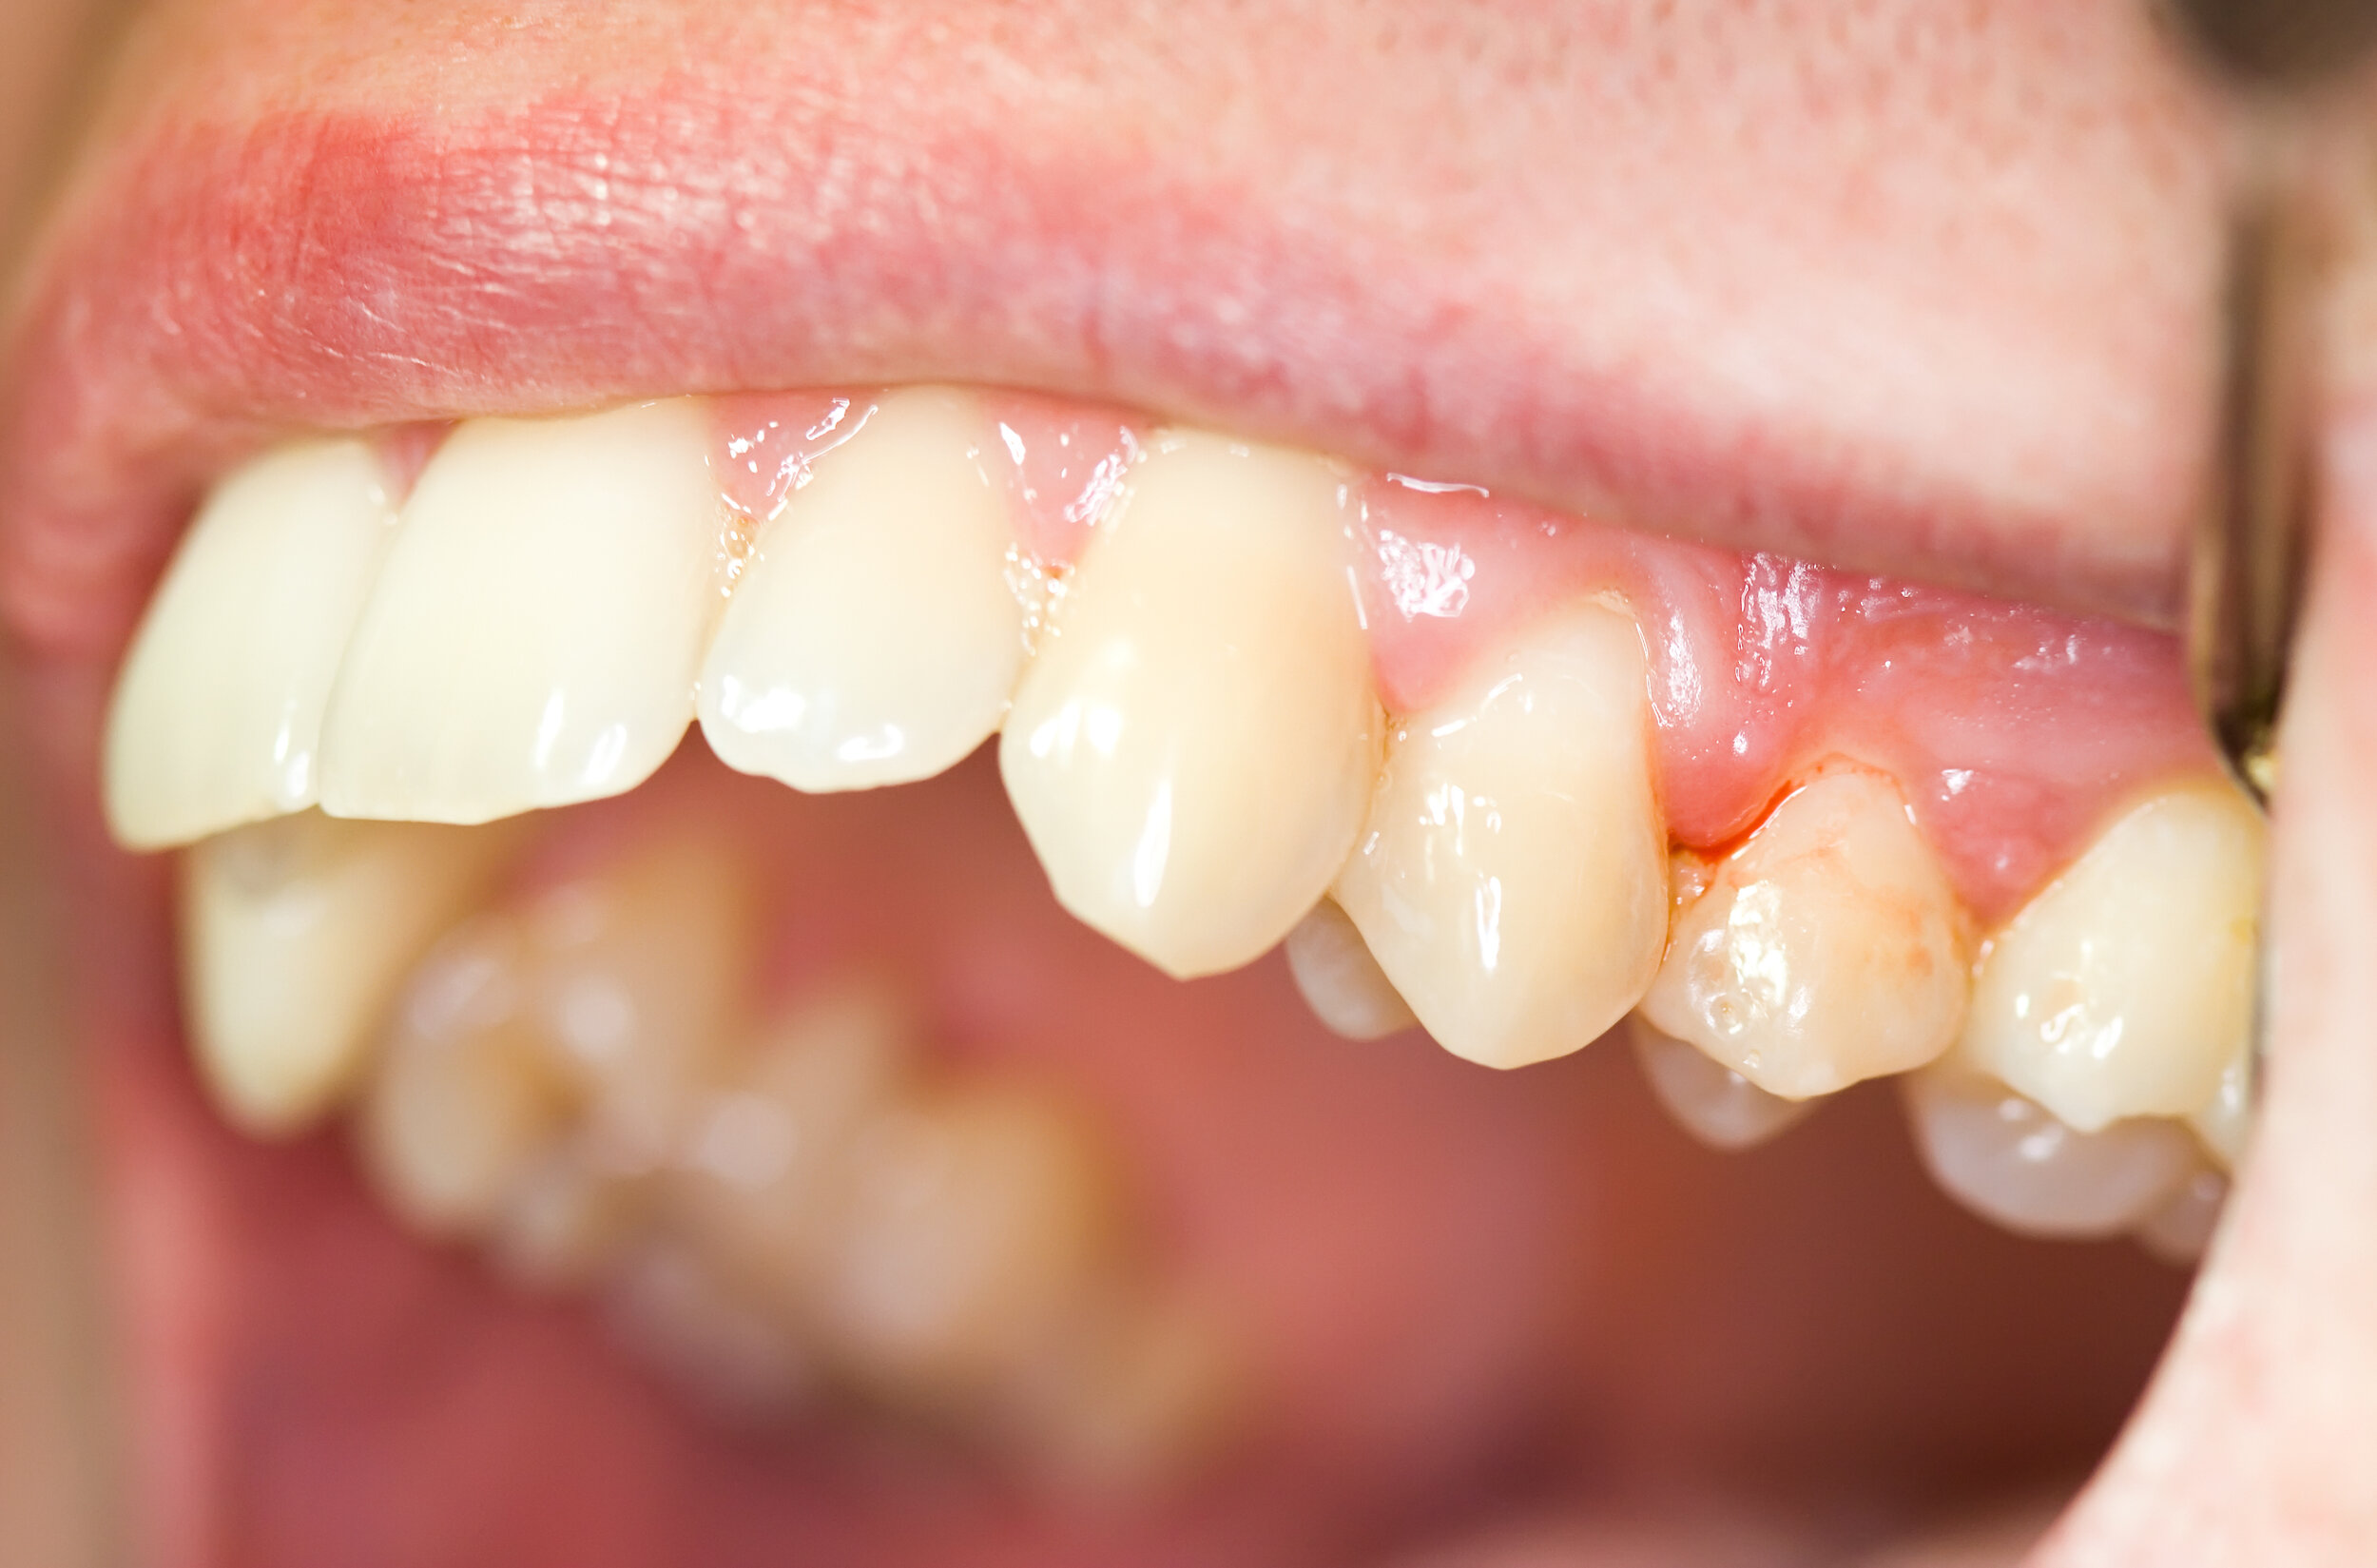 rekenmachine Verdorie kleuring Ontstoken tandvlees genezen — ParoBreda - Praktijk voor parodontologie en  implantologie Breda